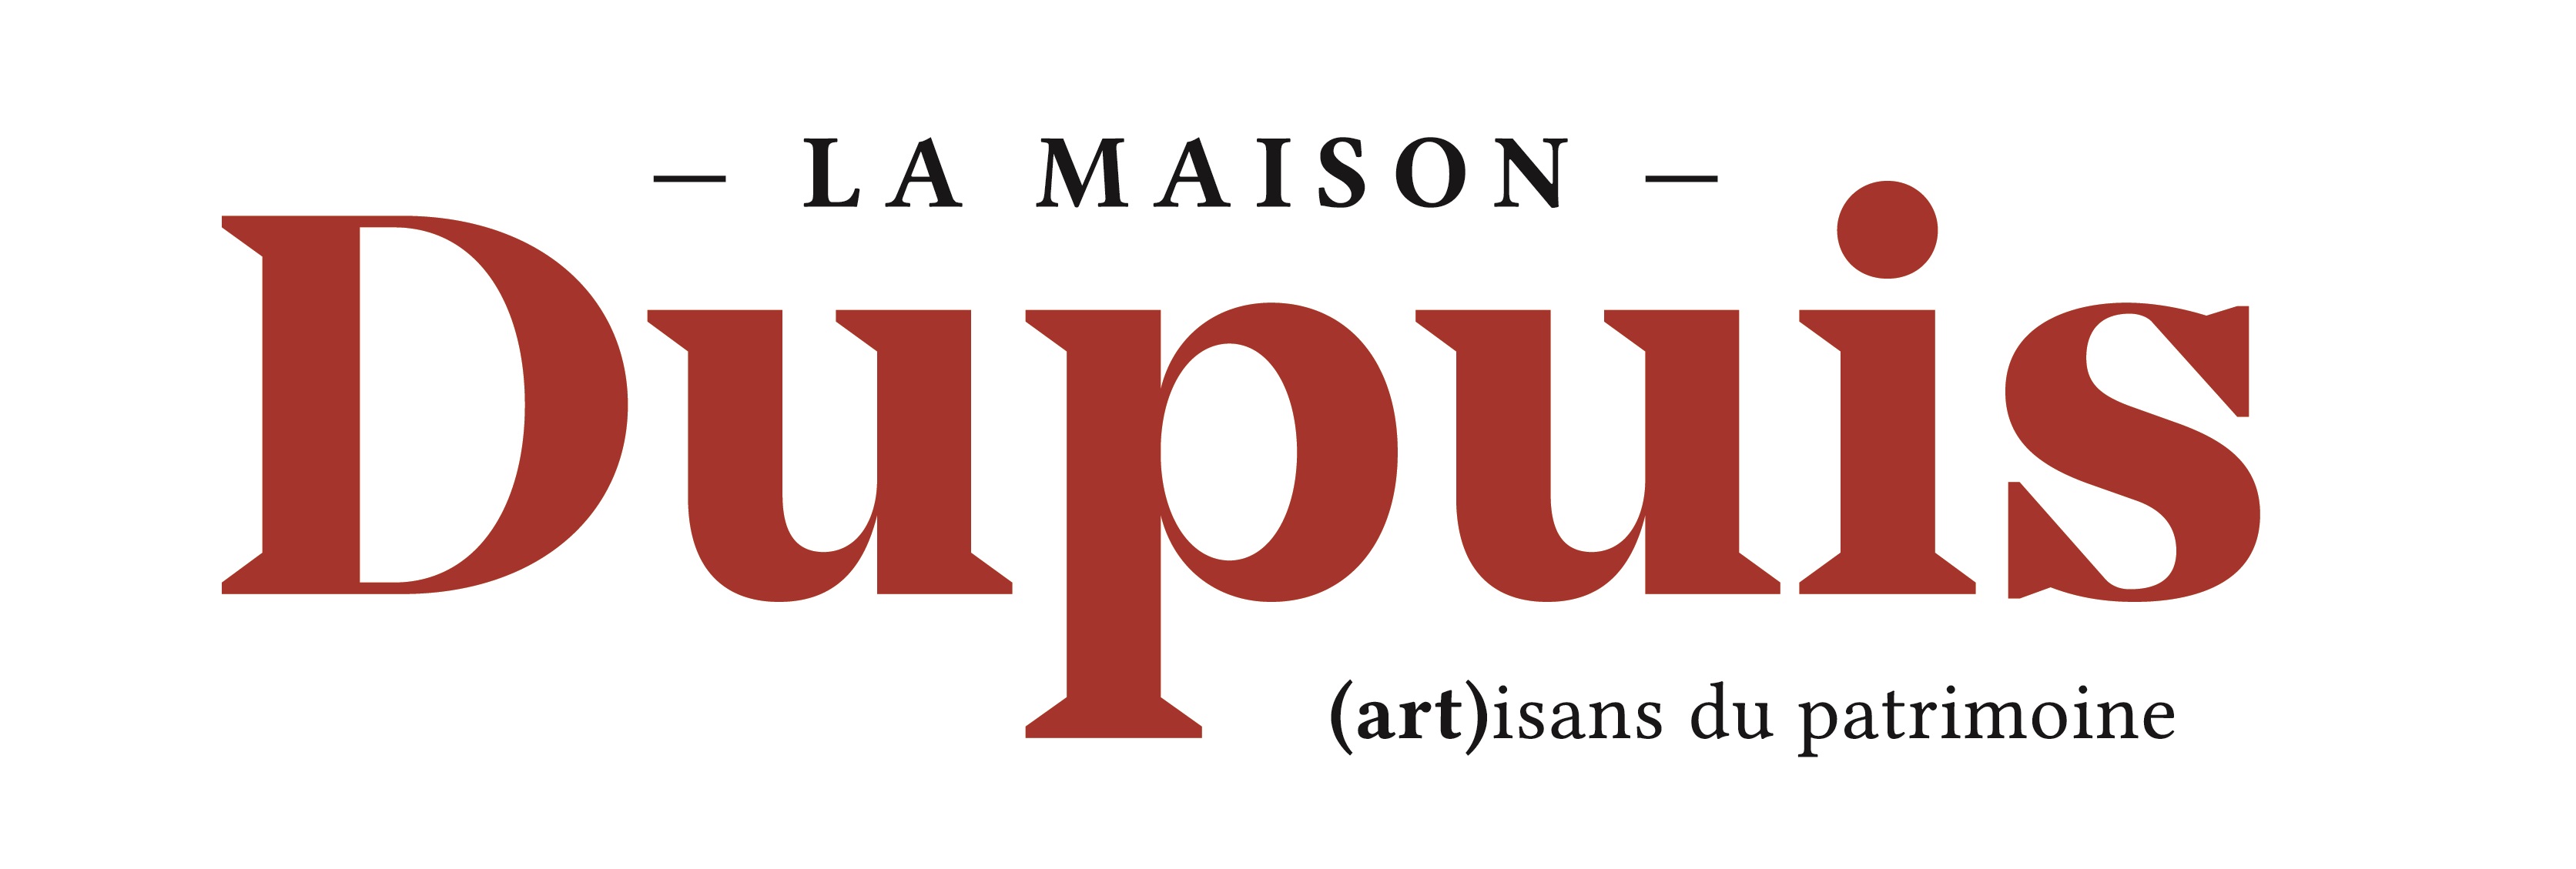 https://www.rouenmetrobasket.com/wp-content/uploads/2019/09/Logo_la_maison_dupuis_couleurs-2.jpg